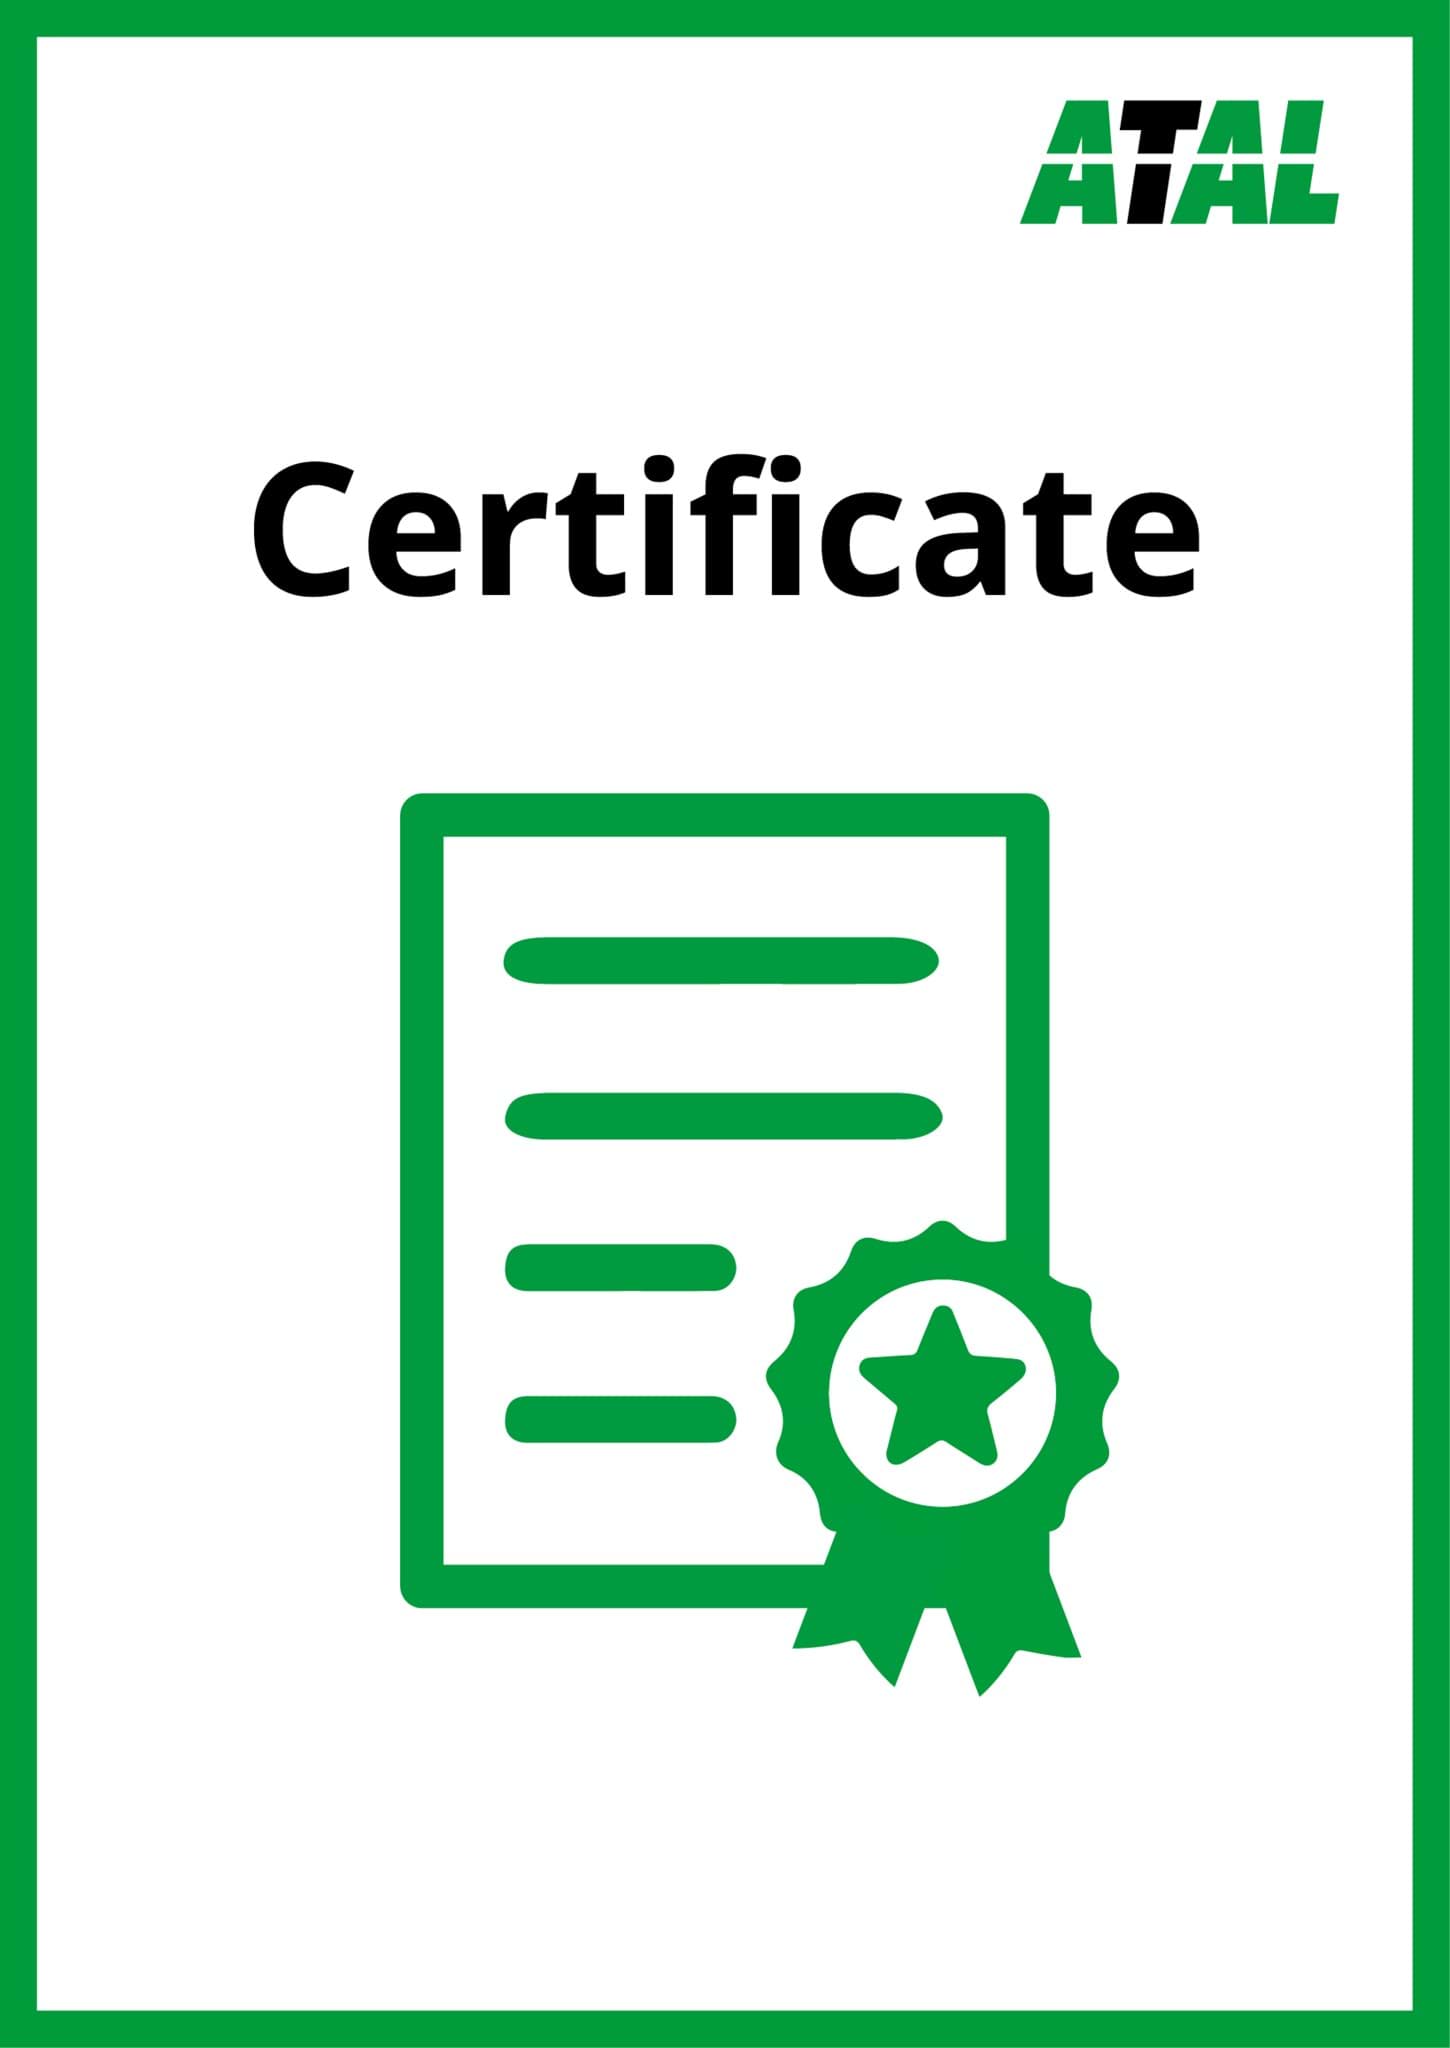 ATAL HIKMICRO ATEX certificate